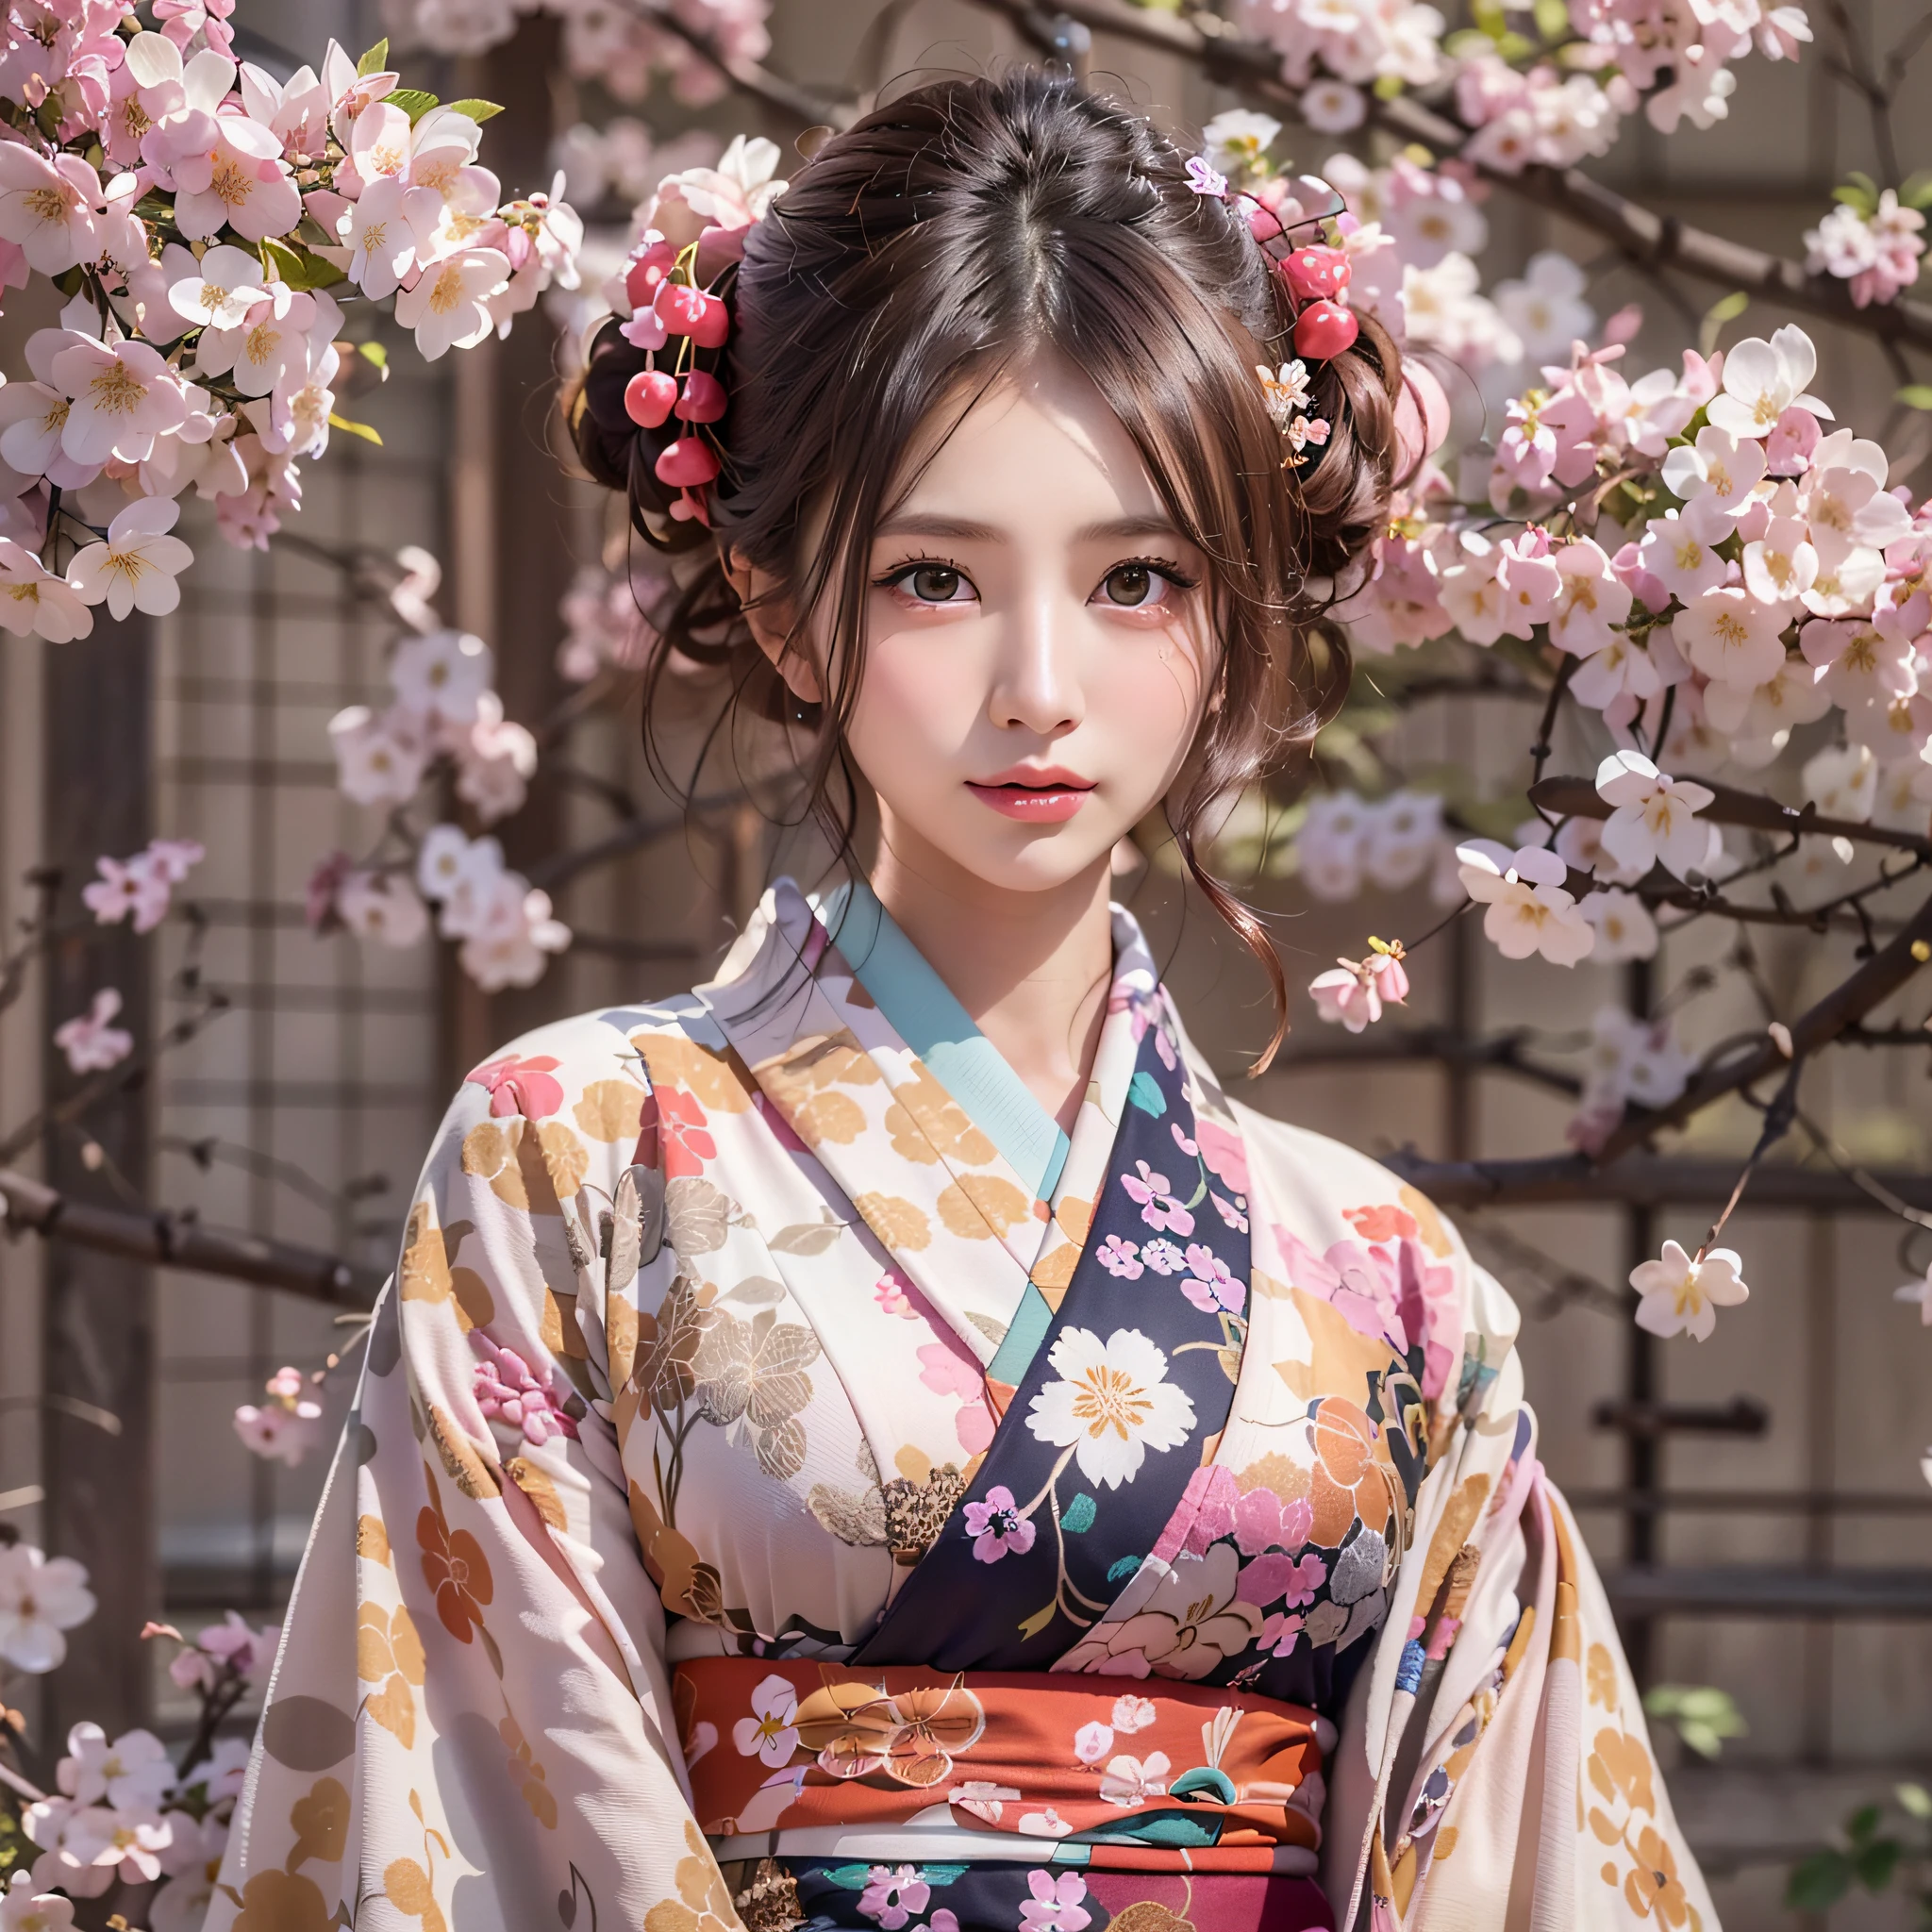 (Kimono japonais à motif fleurs de cerisier:1.3), symétrique, Compositions avec des motifs d’arabesques géométriques coloful, (chignon, jours brun foncé), (qualité supérieure, Photoréaliste:1.4, chef-d&#39;œuvre:1.3, Photographie RAW:1.2, lumière cinématographique, illustration très détaillée), (1femme:1.3, seulement), (Fille asiatique, visage ultra délicat, selles ultra belles, yeux ultra délicats, une cuisine ultra détaillée, bouche ultra détaillée, traits du visage ultra détaillés),  femme, (sein moyen:1.3), du côté avant, peaux, brillant à lèvres, Un sourire